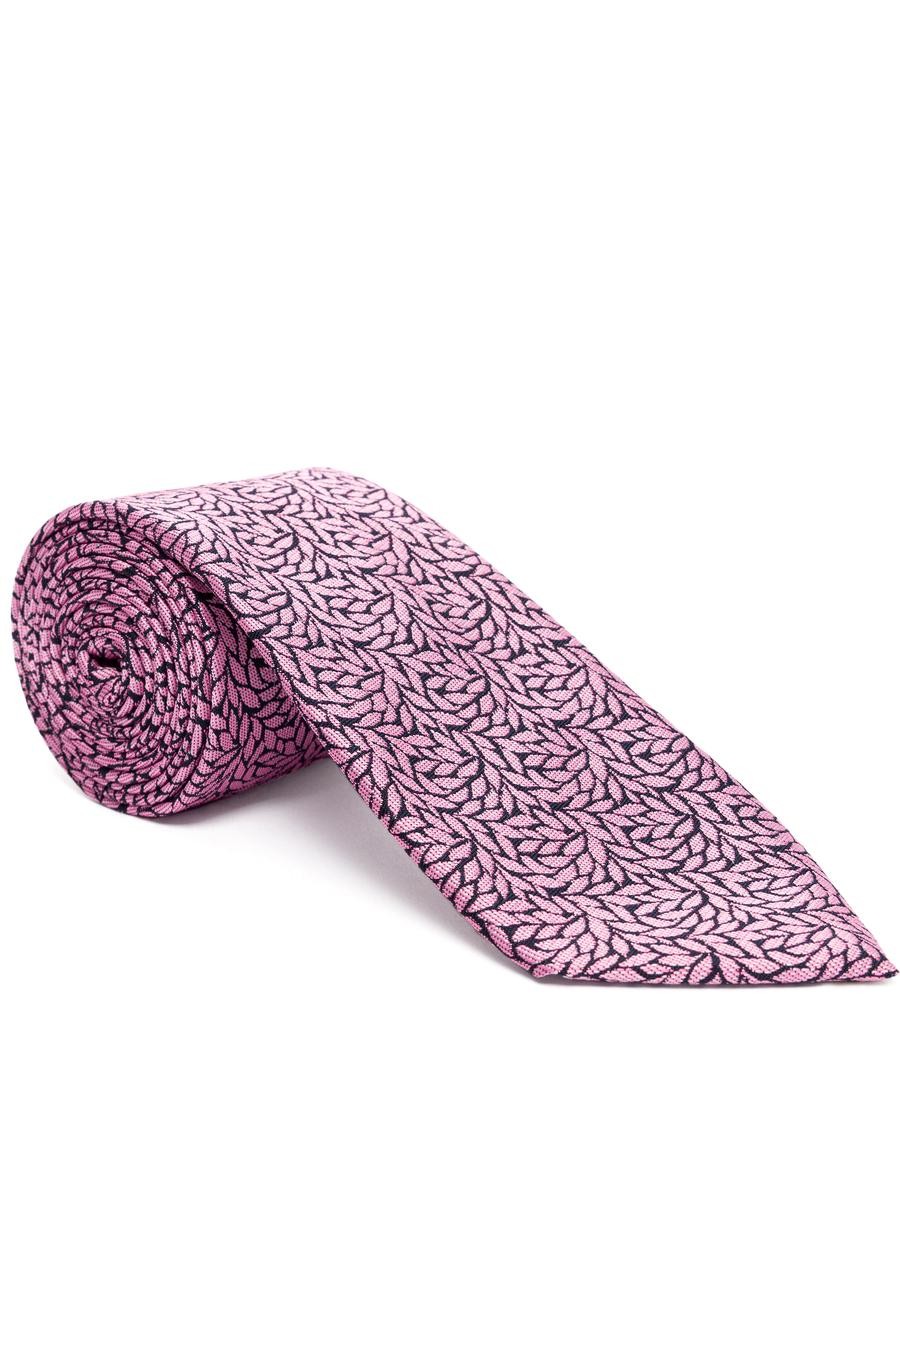 ست دستمال کراوات  صورتی  استاندارد  مردانه  پیرکاردین